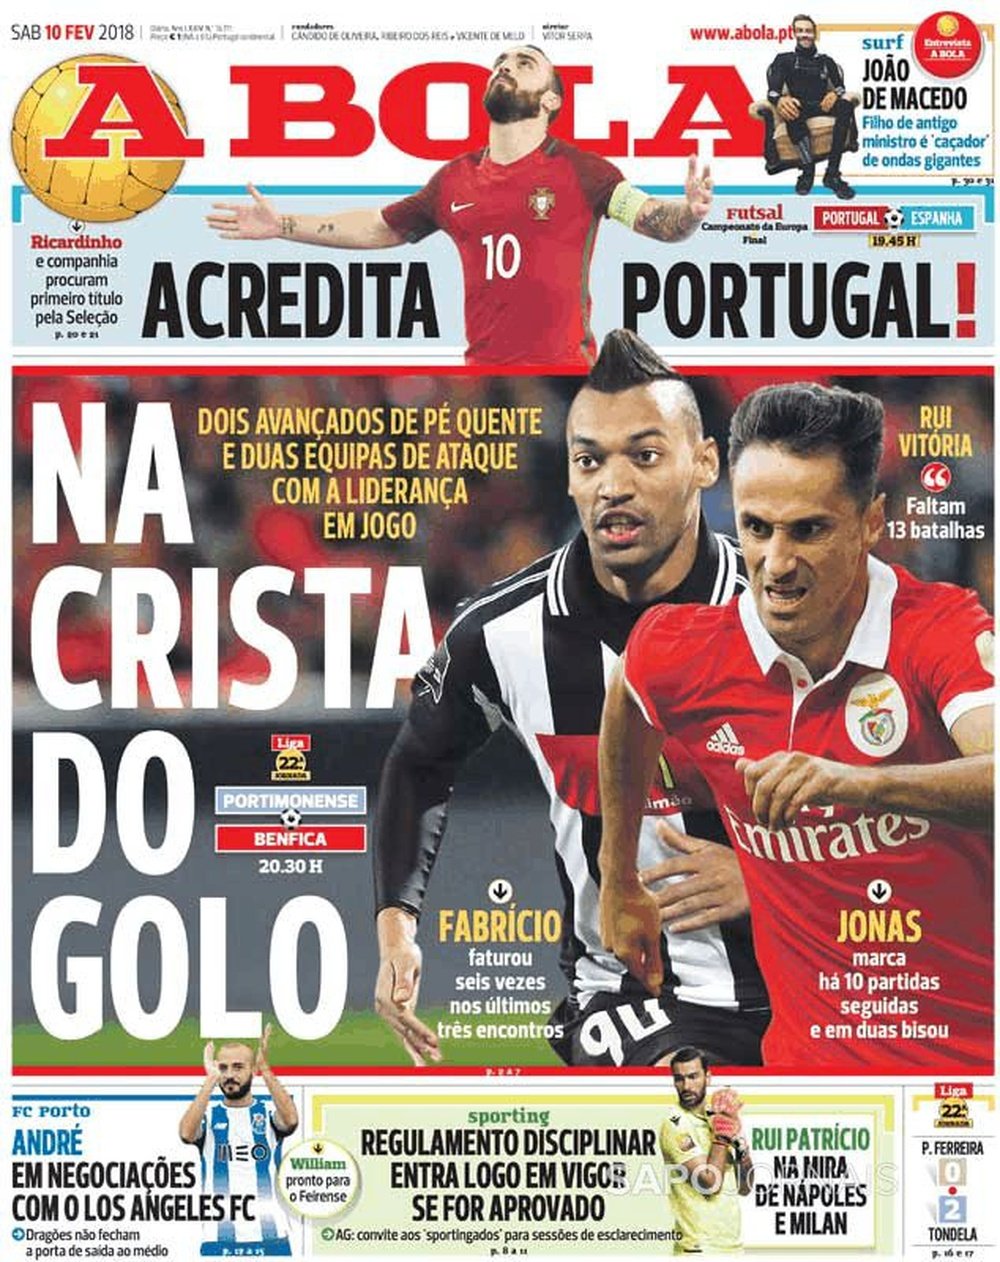 Capa do jornal A Bola, 10/02/2018. A Bola